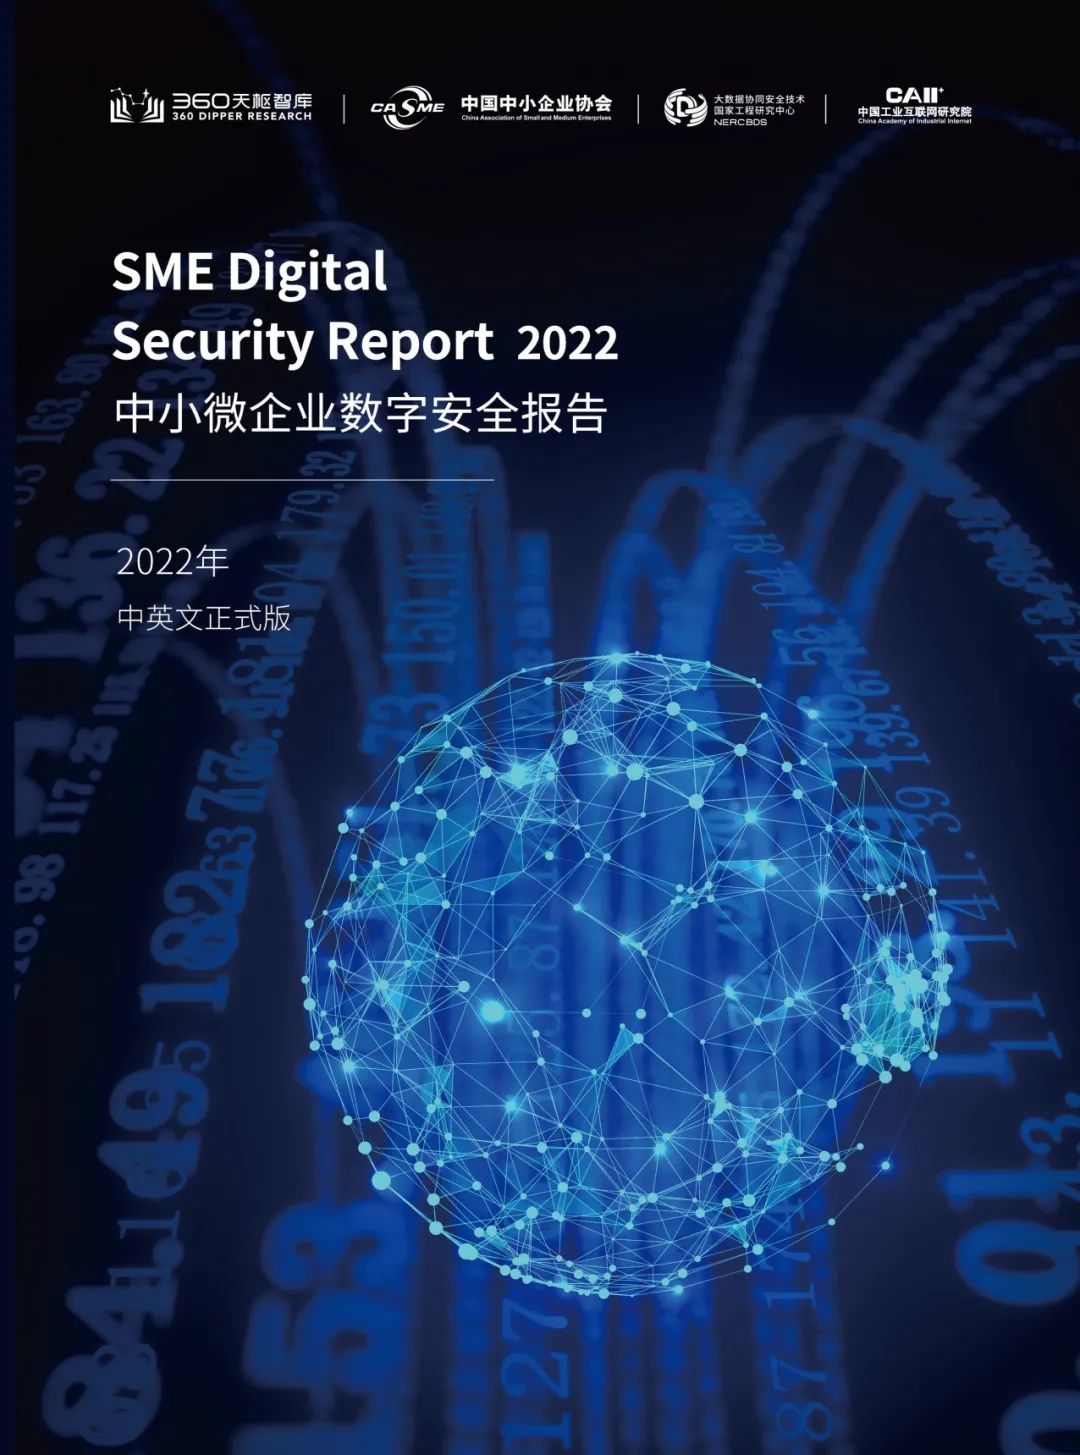 360国内首份《中小微企业数字安全报告》获中国国际数字经济博览会“创新成果”奖